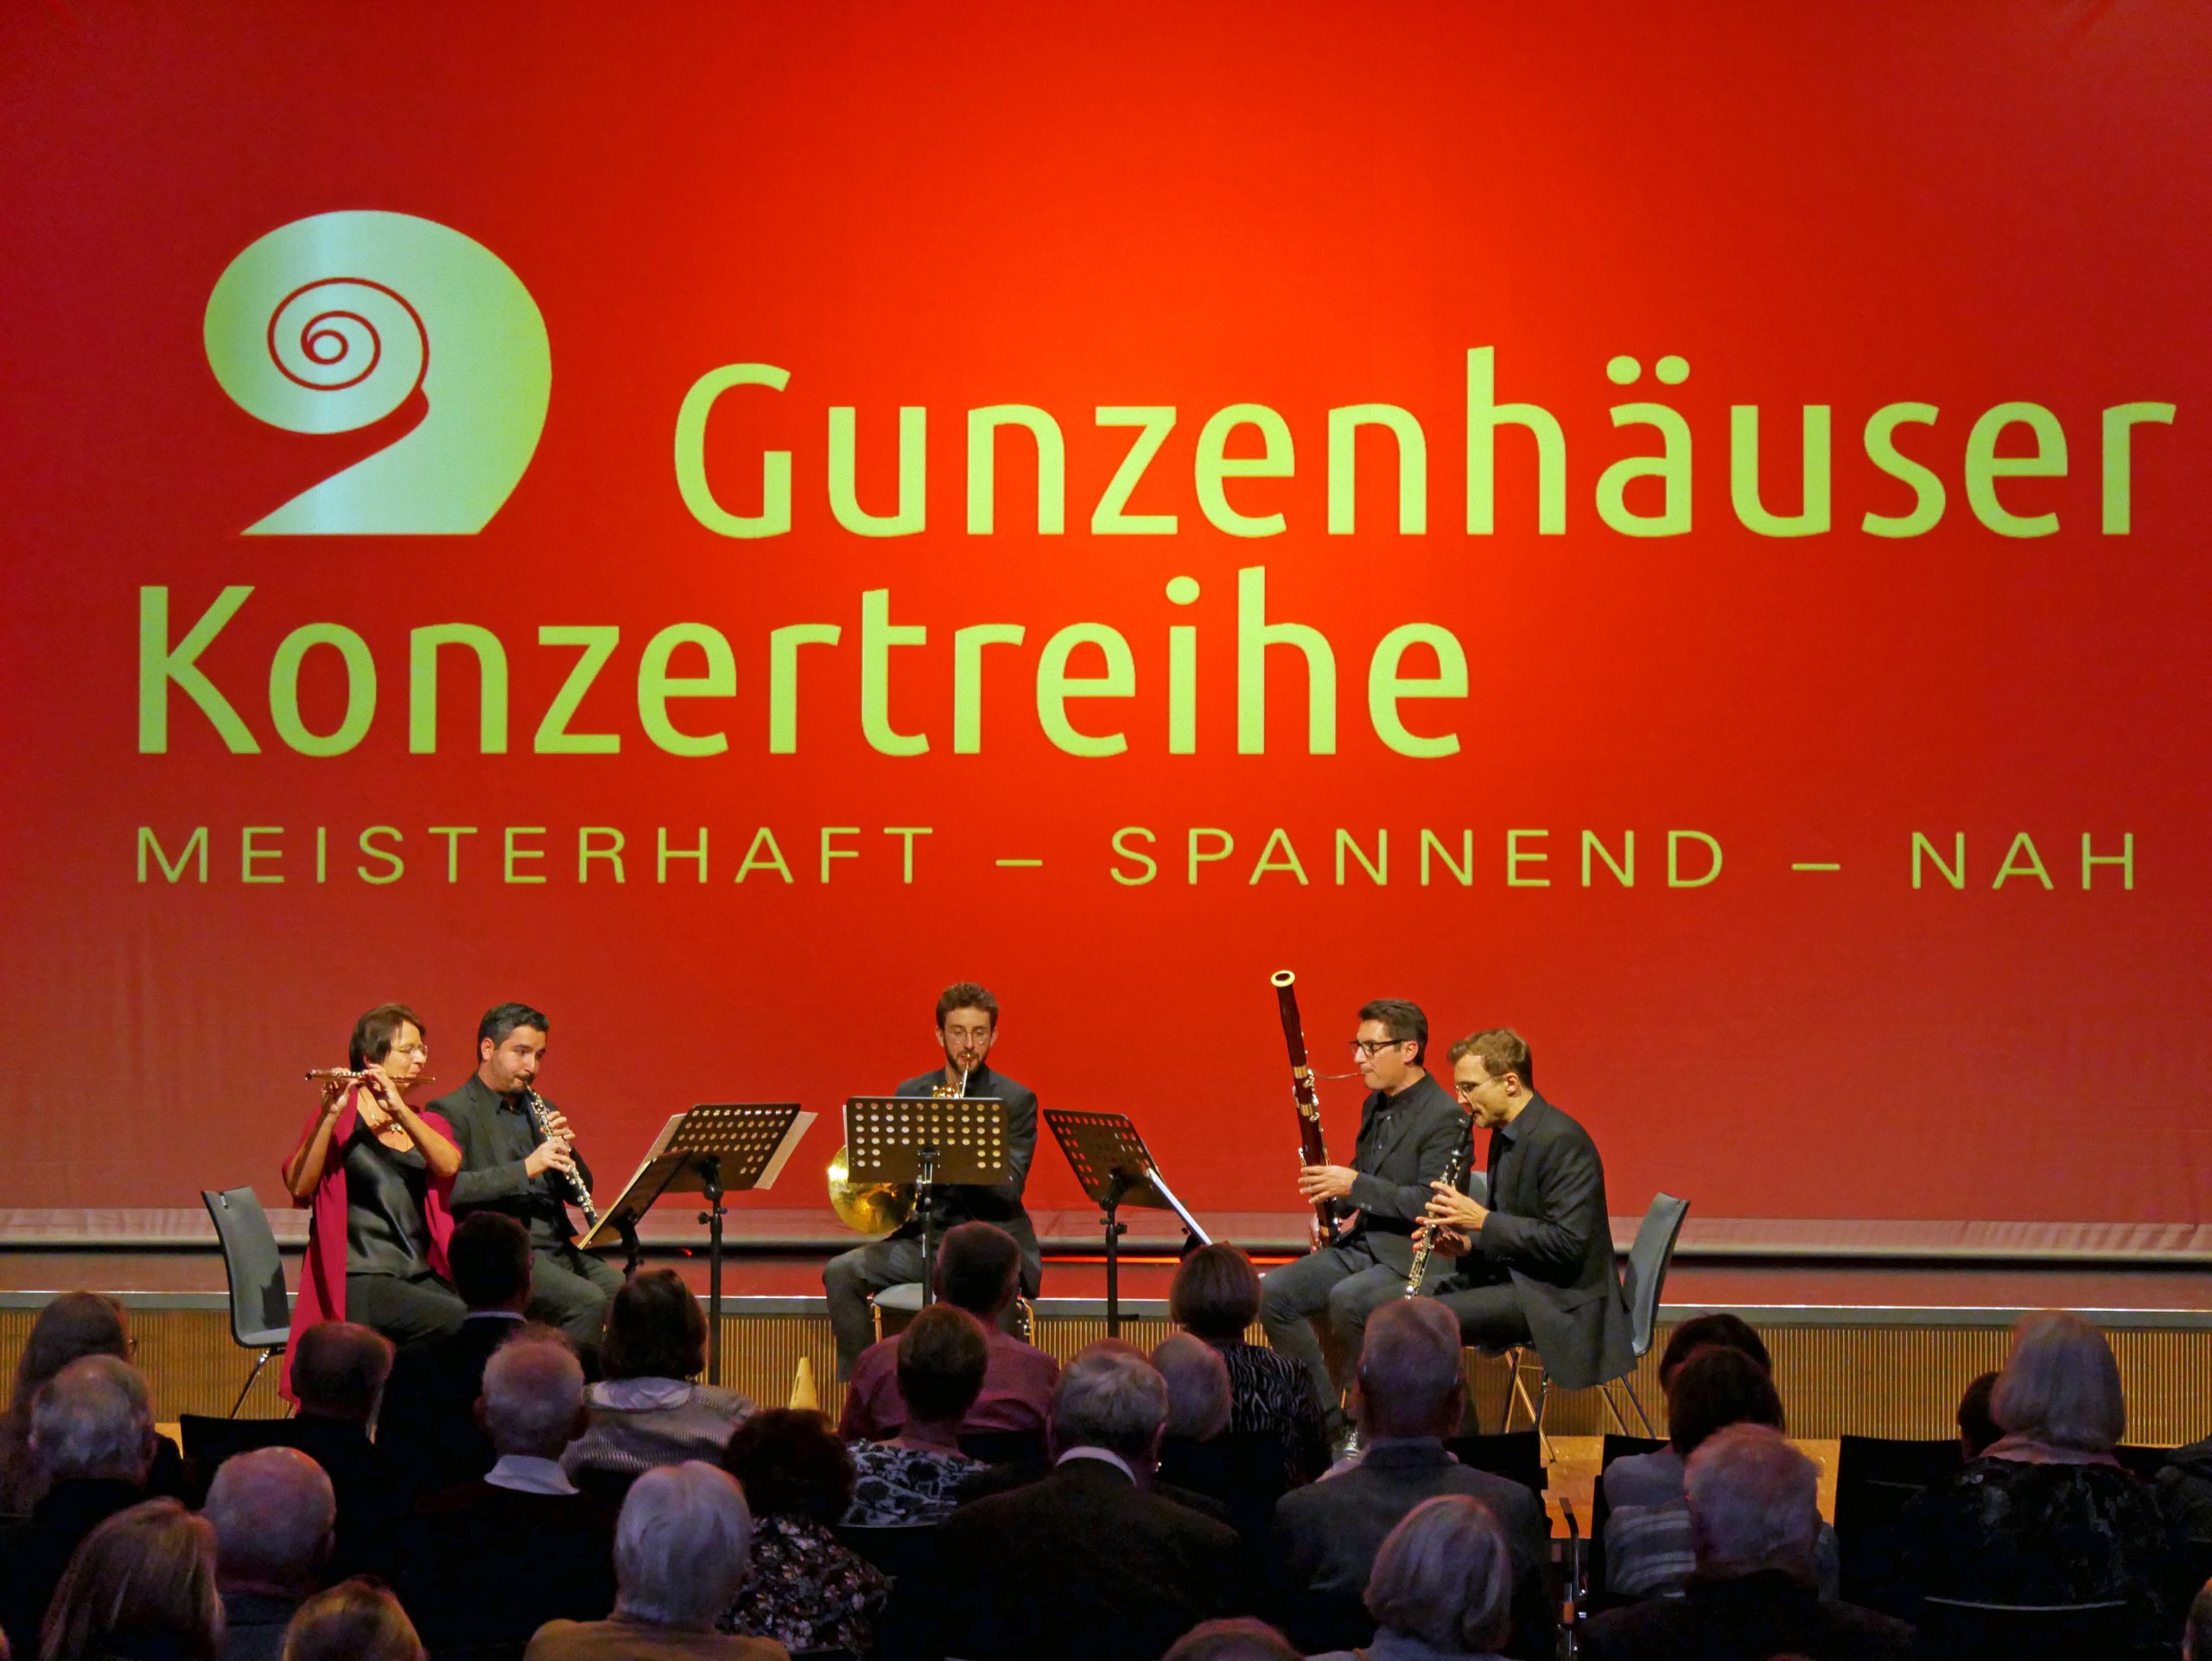 Gunzenhäuser Konzertreihe – Auftritt des Hamburger Bläserquintetts, 20.22.2022